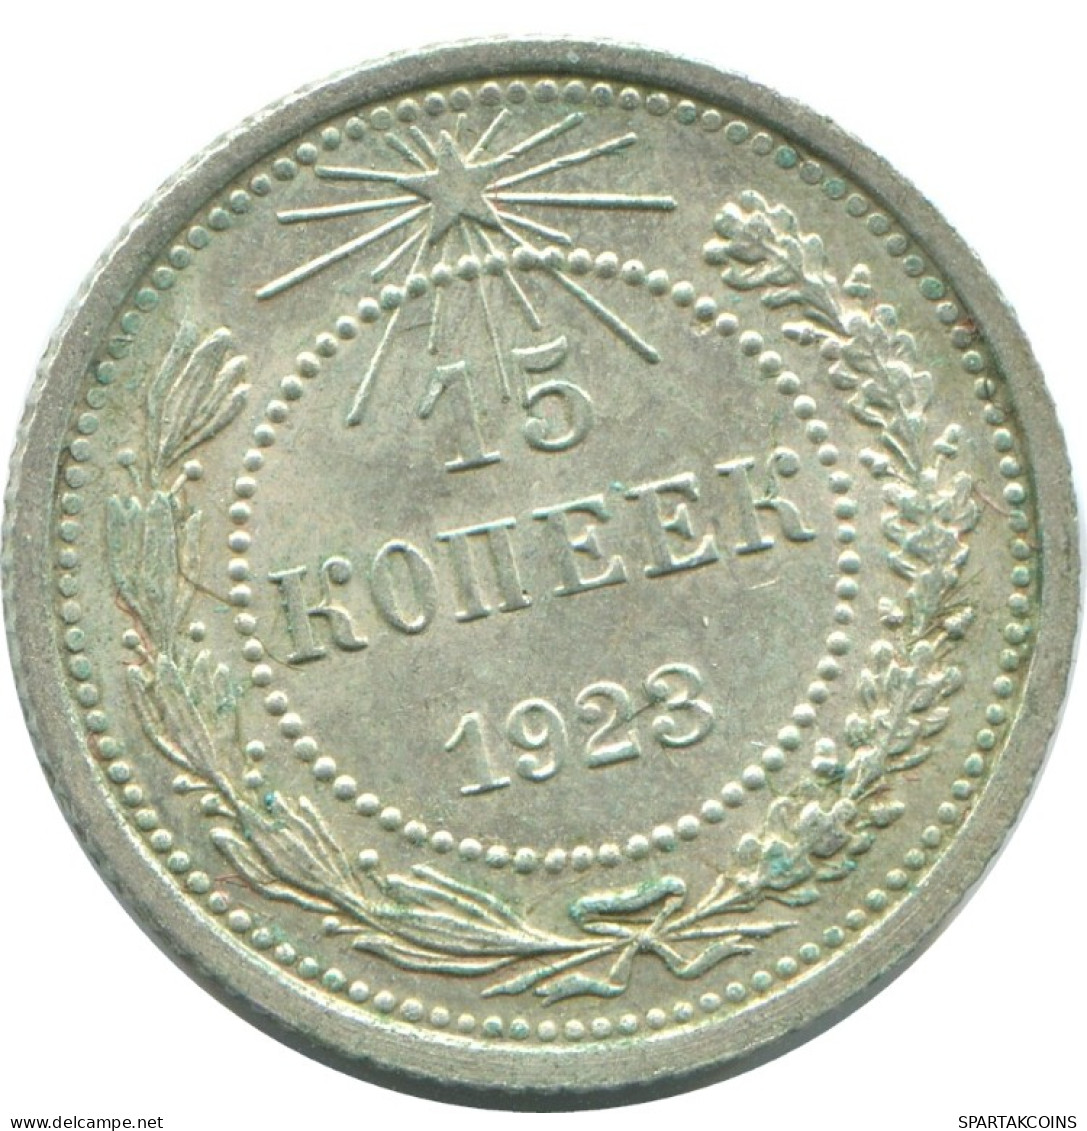 15 KOPEKS 1923 RUSIA RUSSIA RSFSR PLATA Moneda HIGH GRADE #AF061.4.E.A - Russland